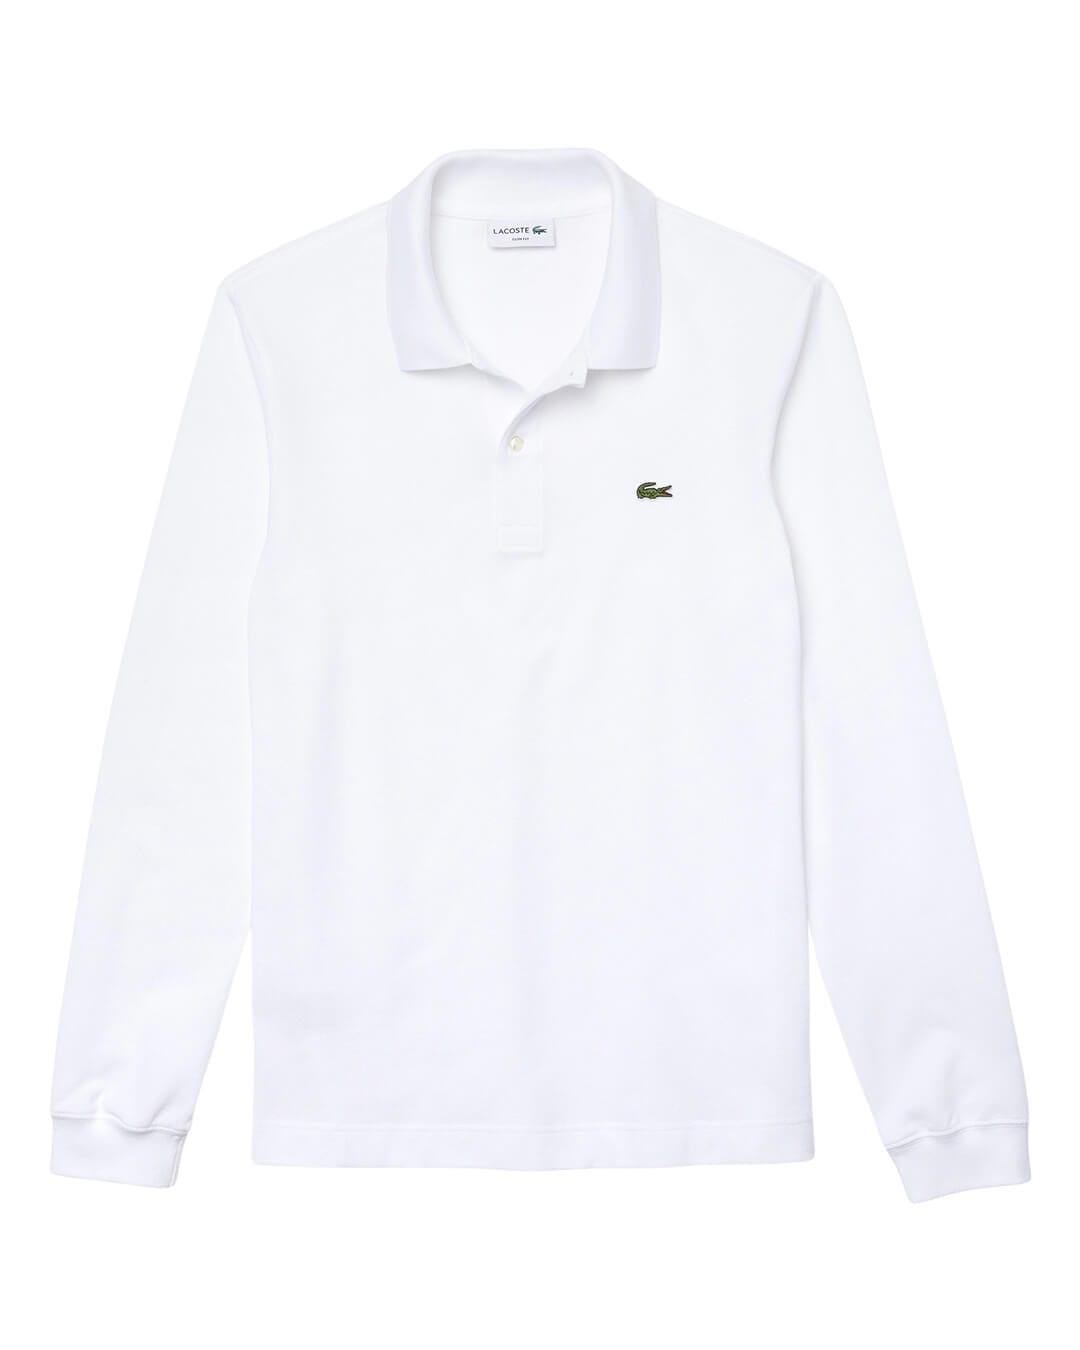 Lacoste Polo Shirts Lacoste Slim Fit Petit Piqué White Polo Shirt